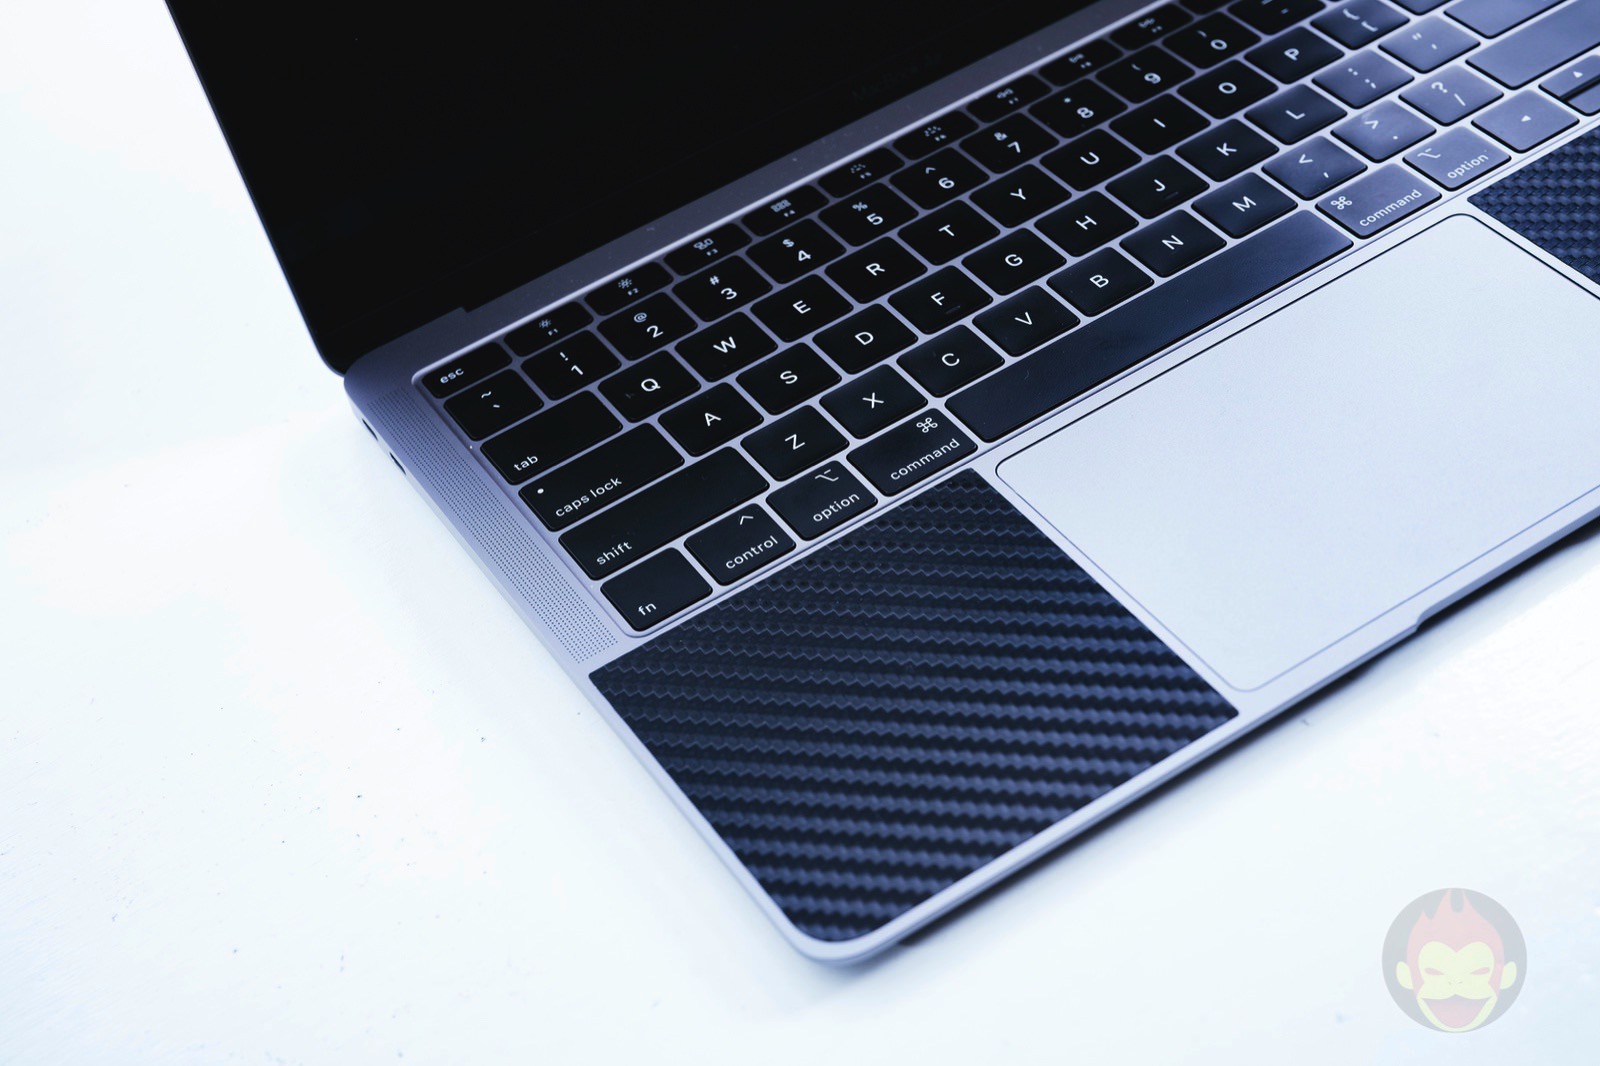 MacBookAir-2018-Keyboard-and-trackpack-01.jpg